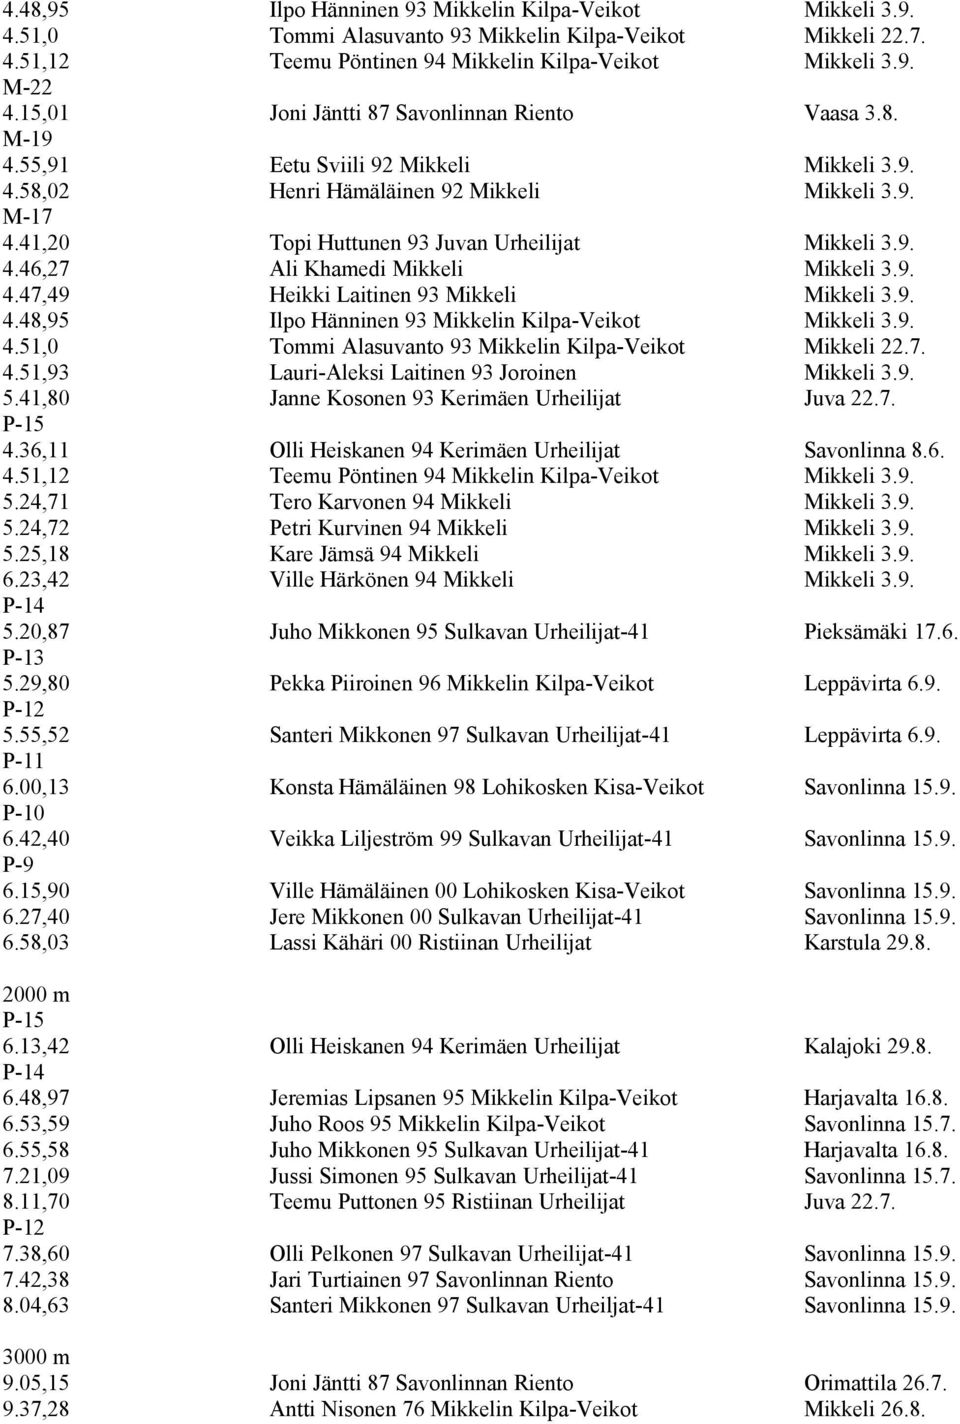 41,20 Topi Huttunen 93 Juvan Urheilijat Mikkeli 3.9. 4.46,27 Ali Khamedi Mikkeli Mikkeli 3.9. 4.47,49 Heikki Laitinen 93 Mikkeli Mikkeli 3.9. 4.48,95 Ilpo Hänninen 93 Mikkelin Kilpa-Veikot Mikkeli 3.